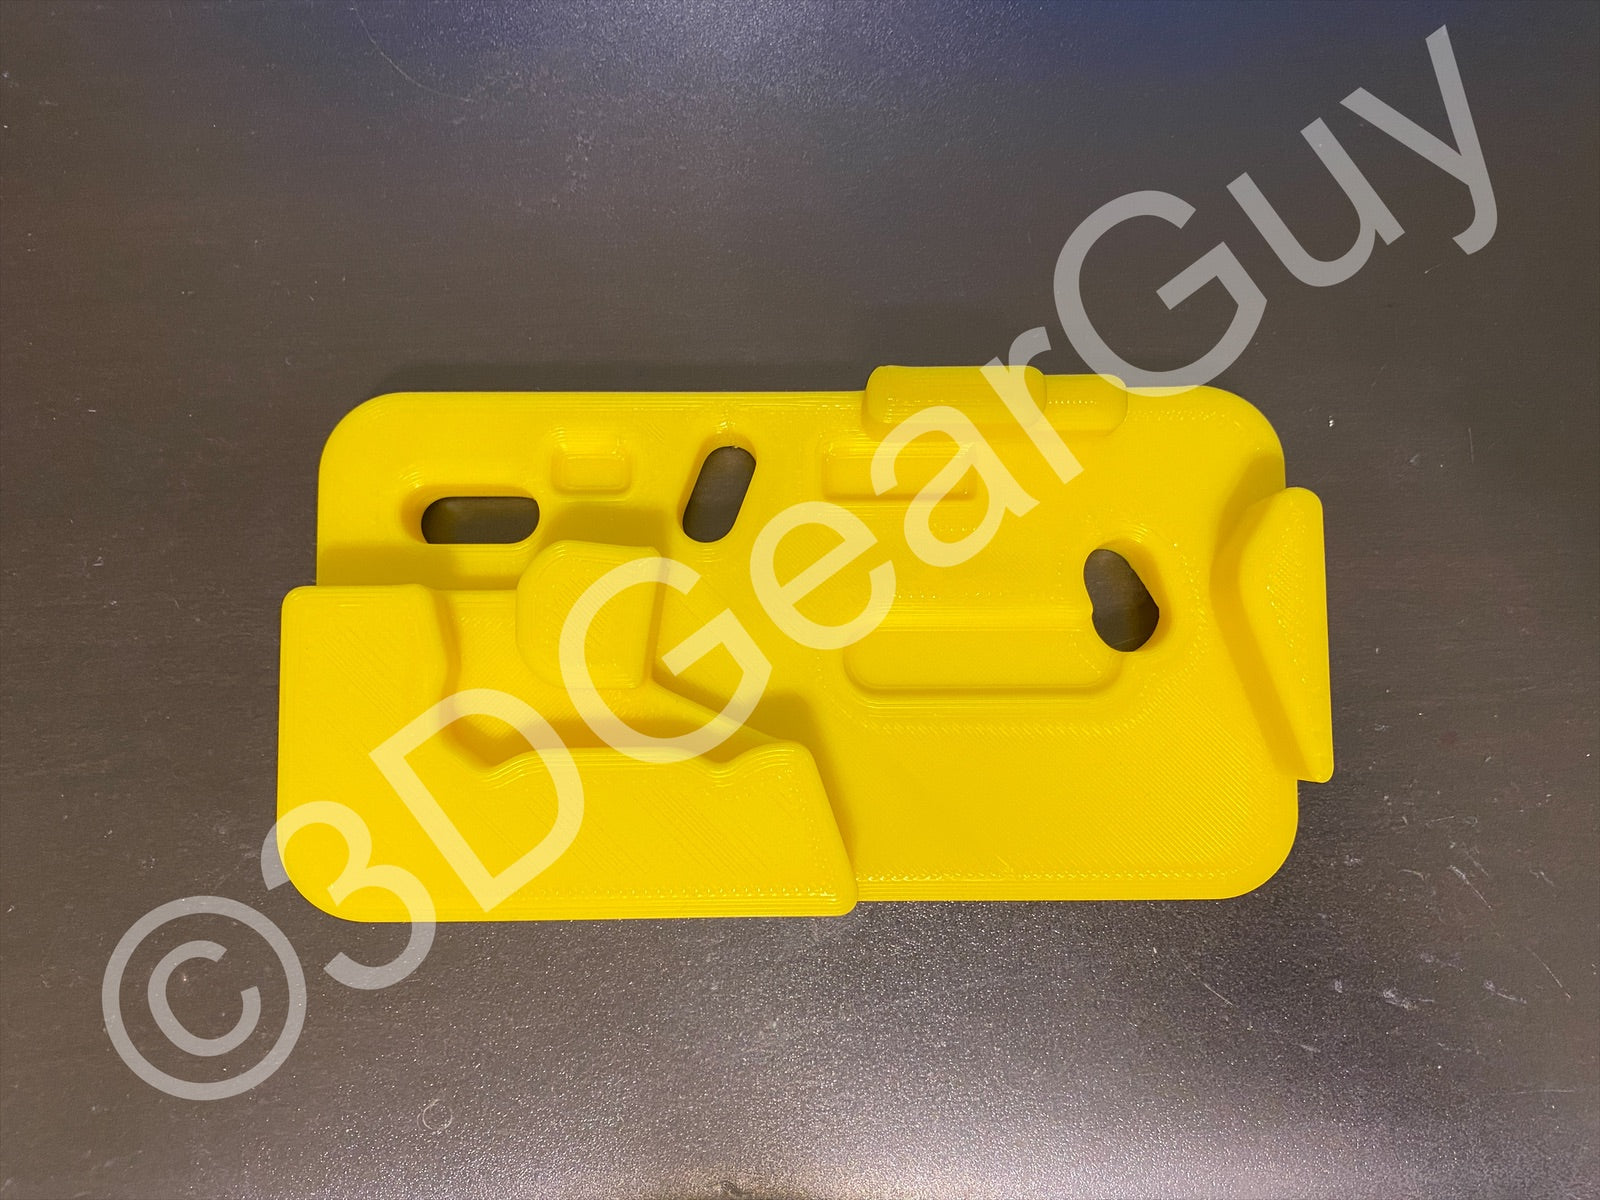 Armorer's Gunsmith Bench Block For All Glock Models – 3DGearGuy